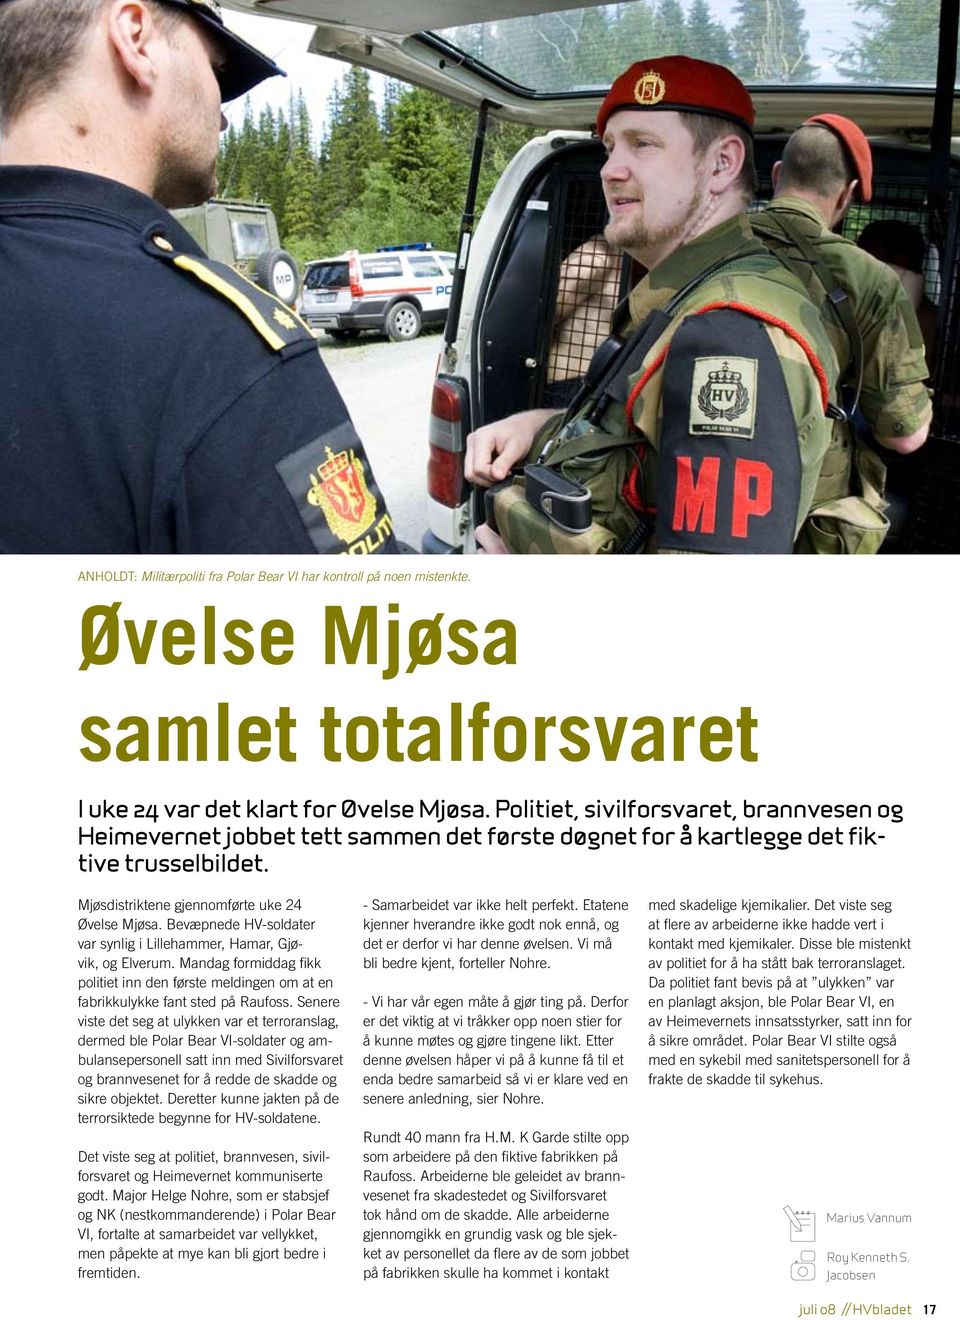 Bevæpnede HV-soldater var synlig i Lillehammer, Hamar, Gjøvik, og Elverum. Mandag formiddag fikk politiet inn den første meldingen om at en fabrikkulykke fant sted på Raufoss.